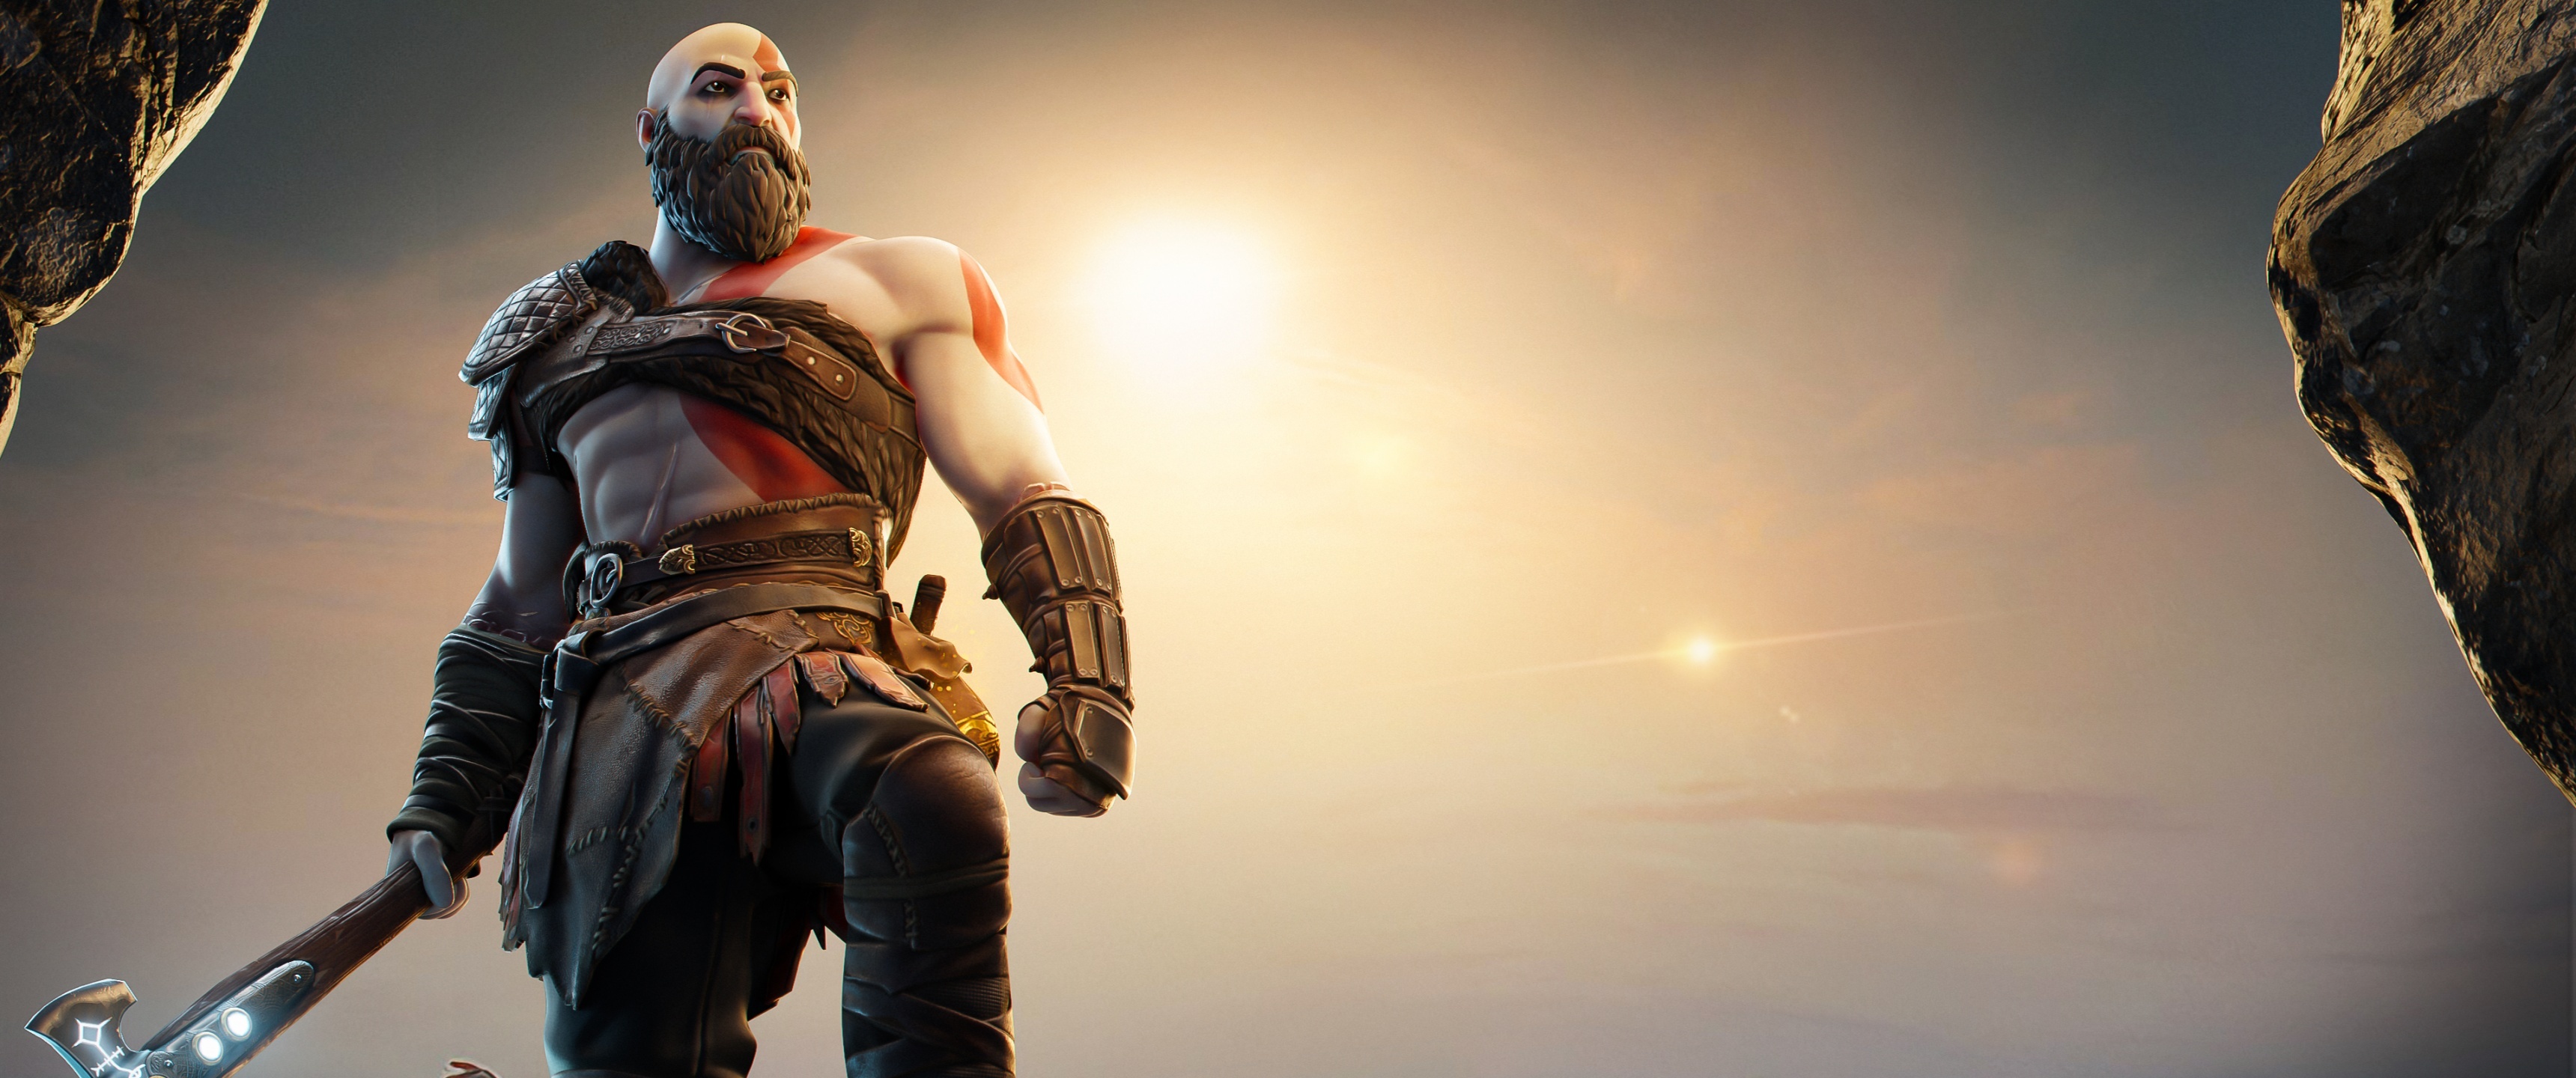 Kratos wallpaper 4K, God of War Fortnite skin, Gaming crossover, 3440x1440 Dual Screen Desktop